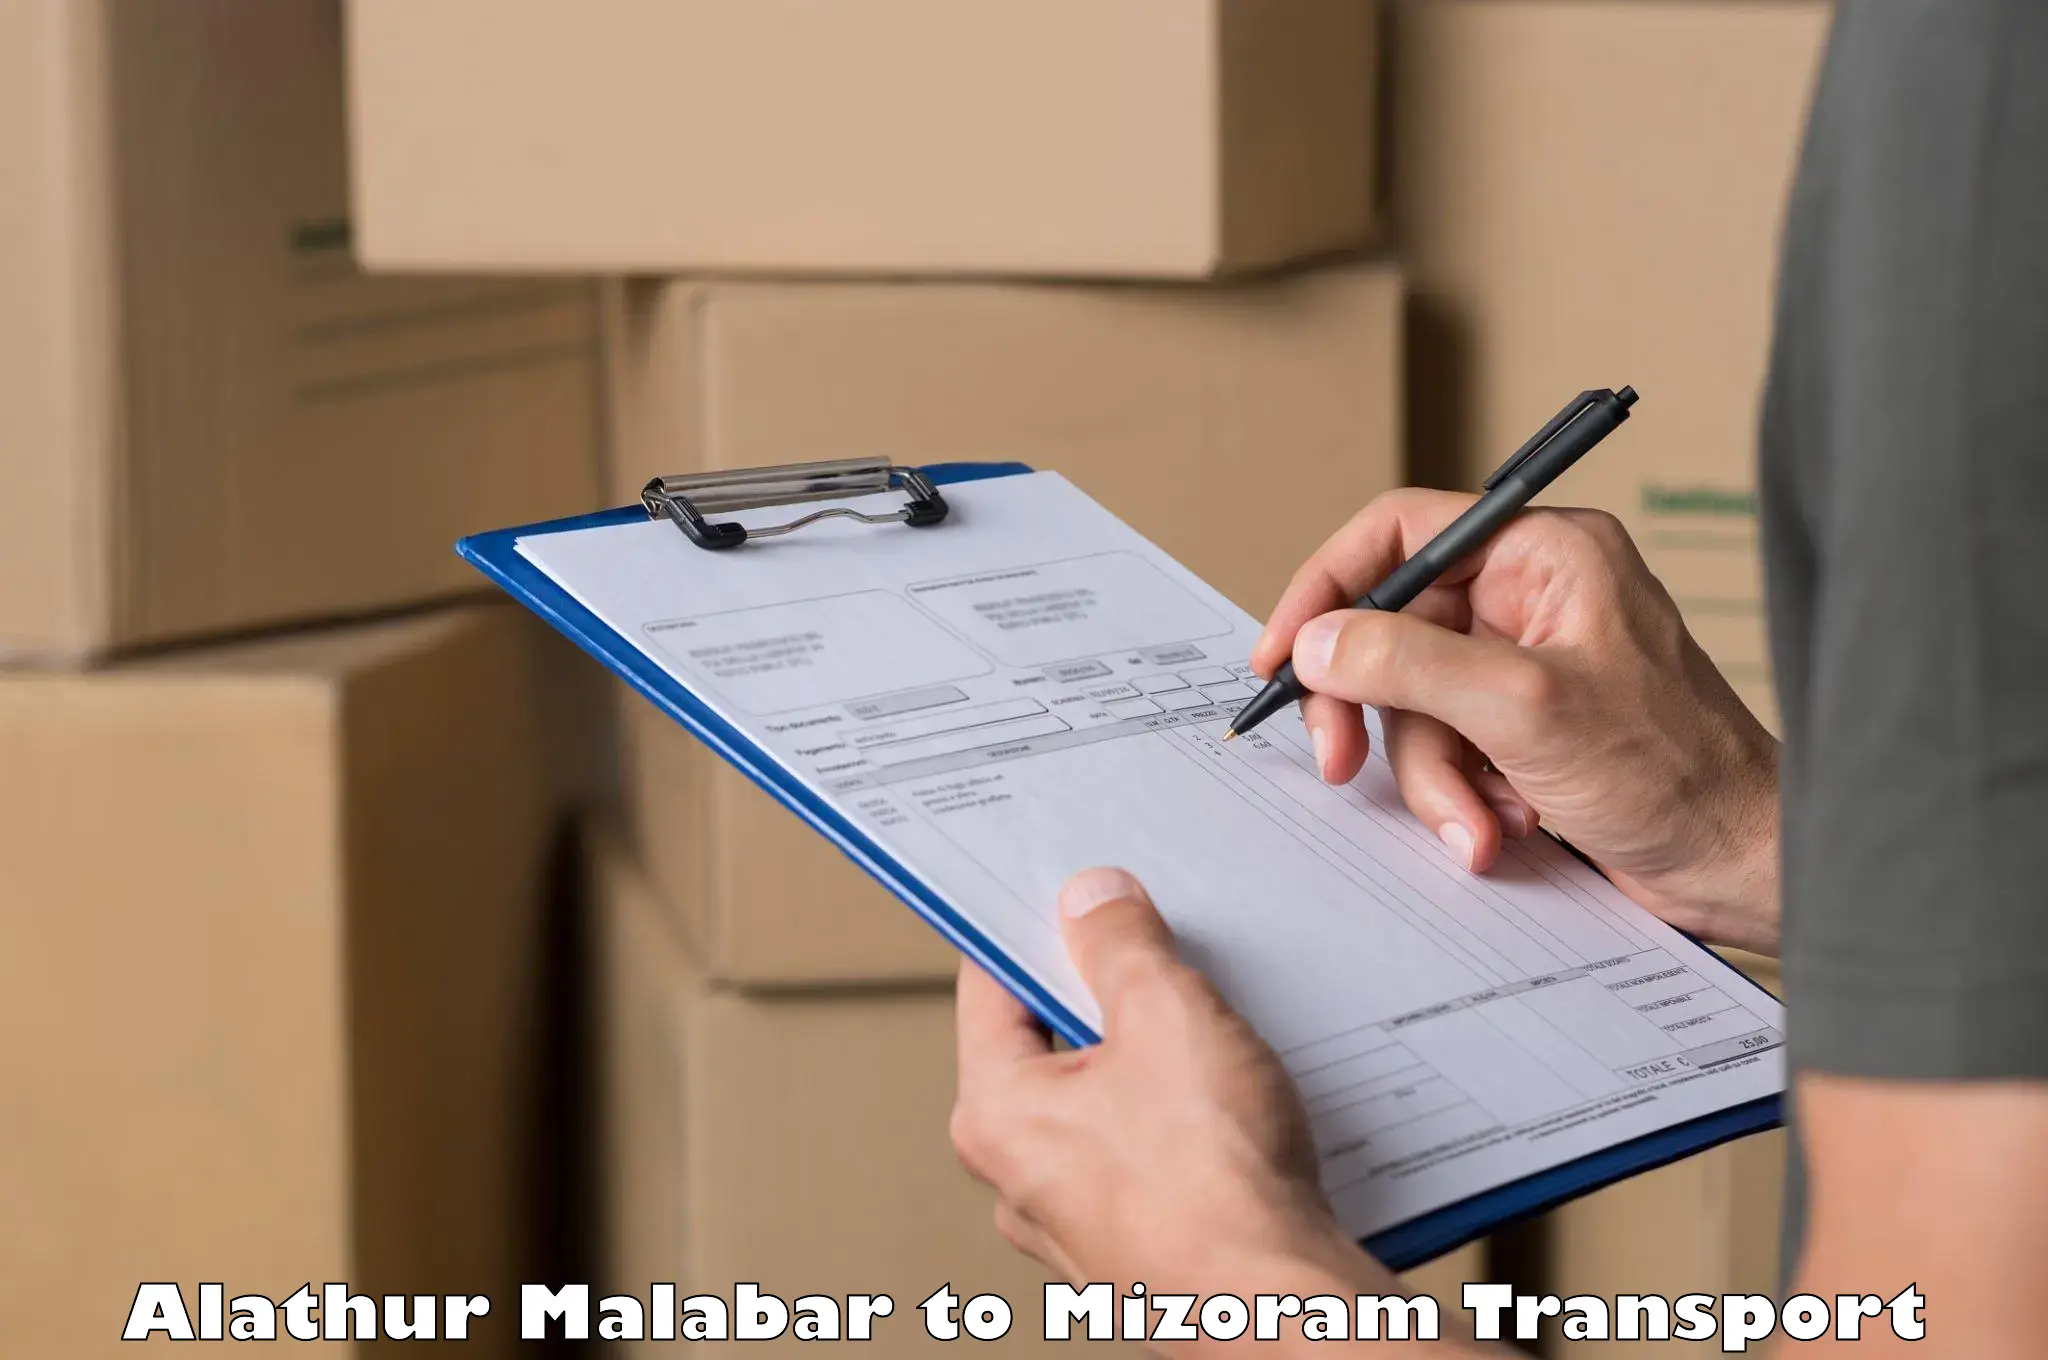 Transport shared services Alathur Malabar to Darlawn